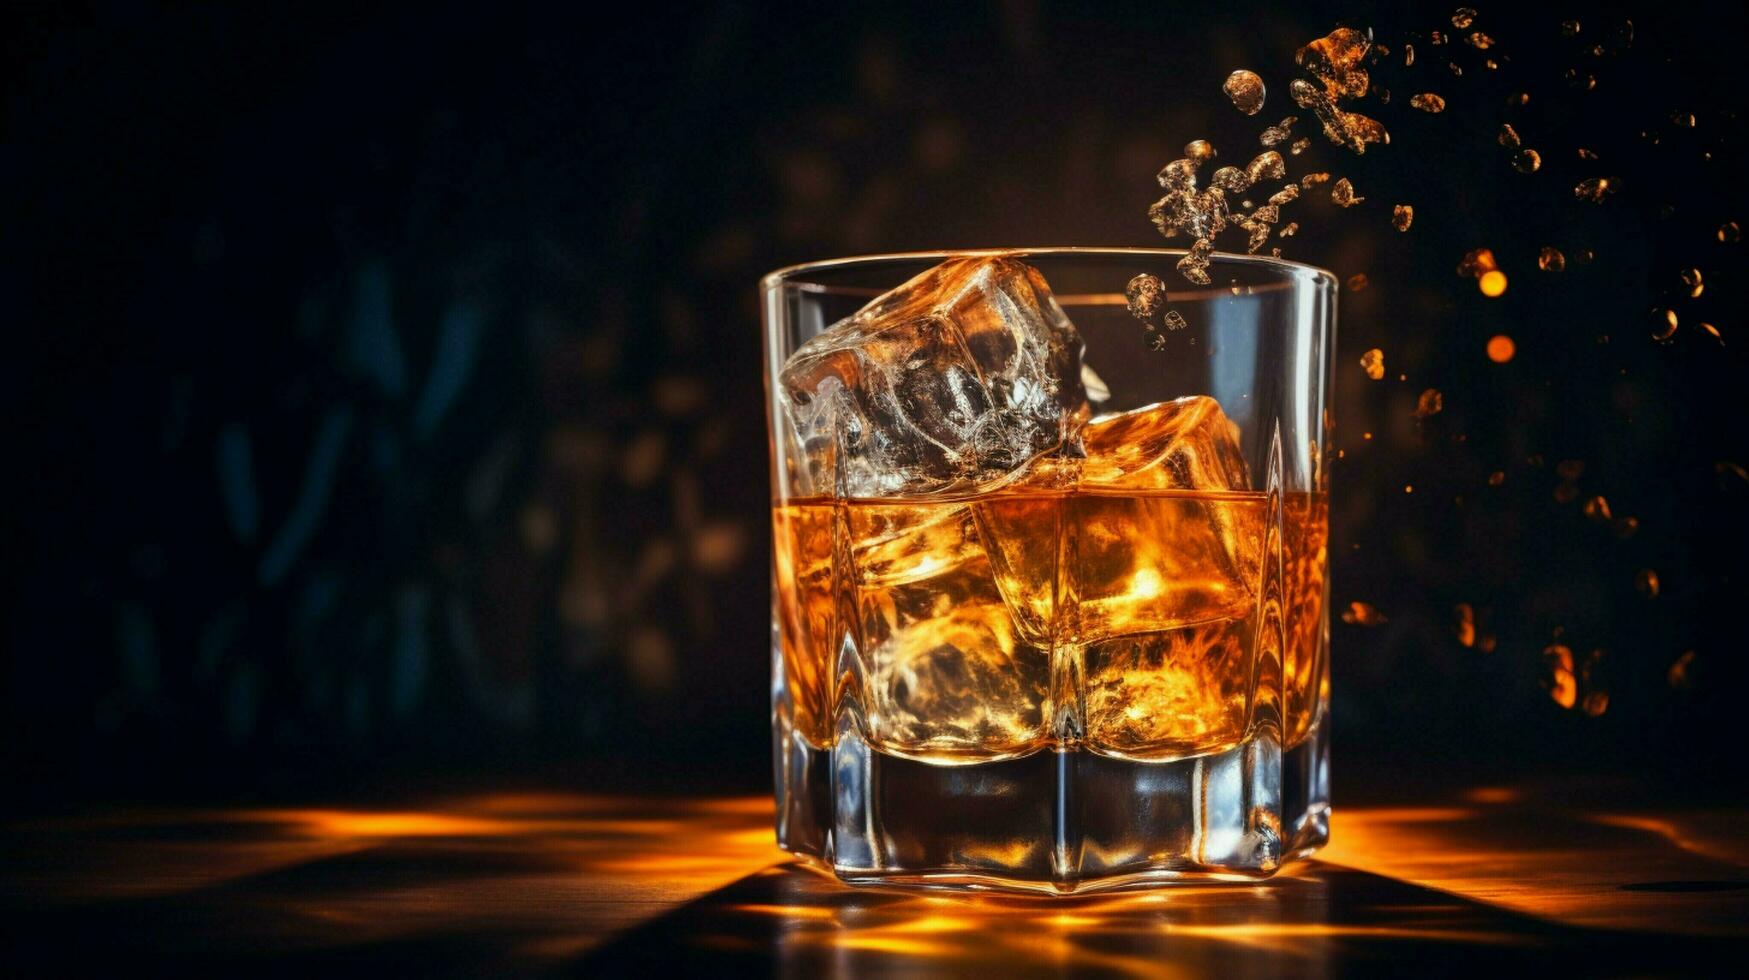 whisky su ghiaccio nel raggiante bicchiere movimento foto